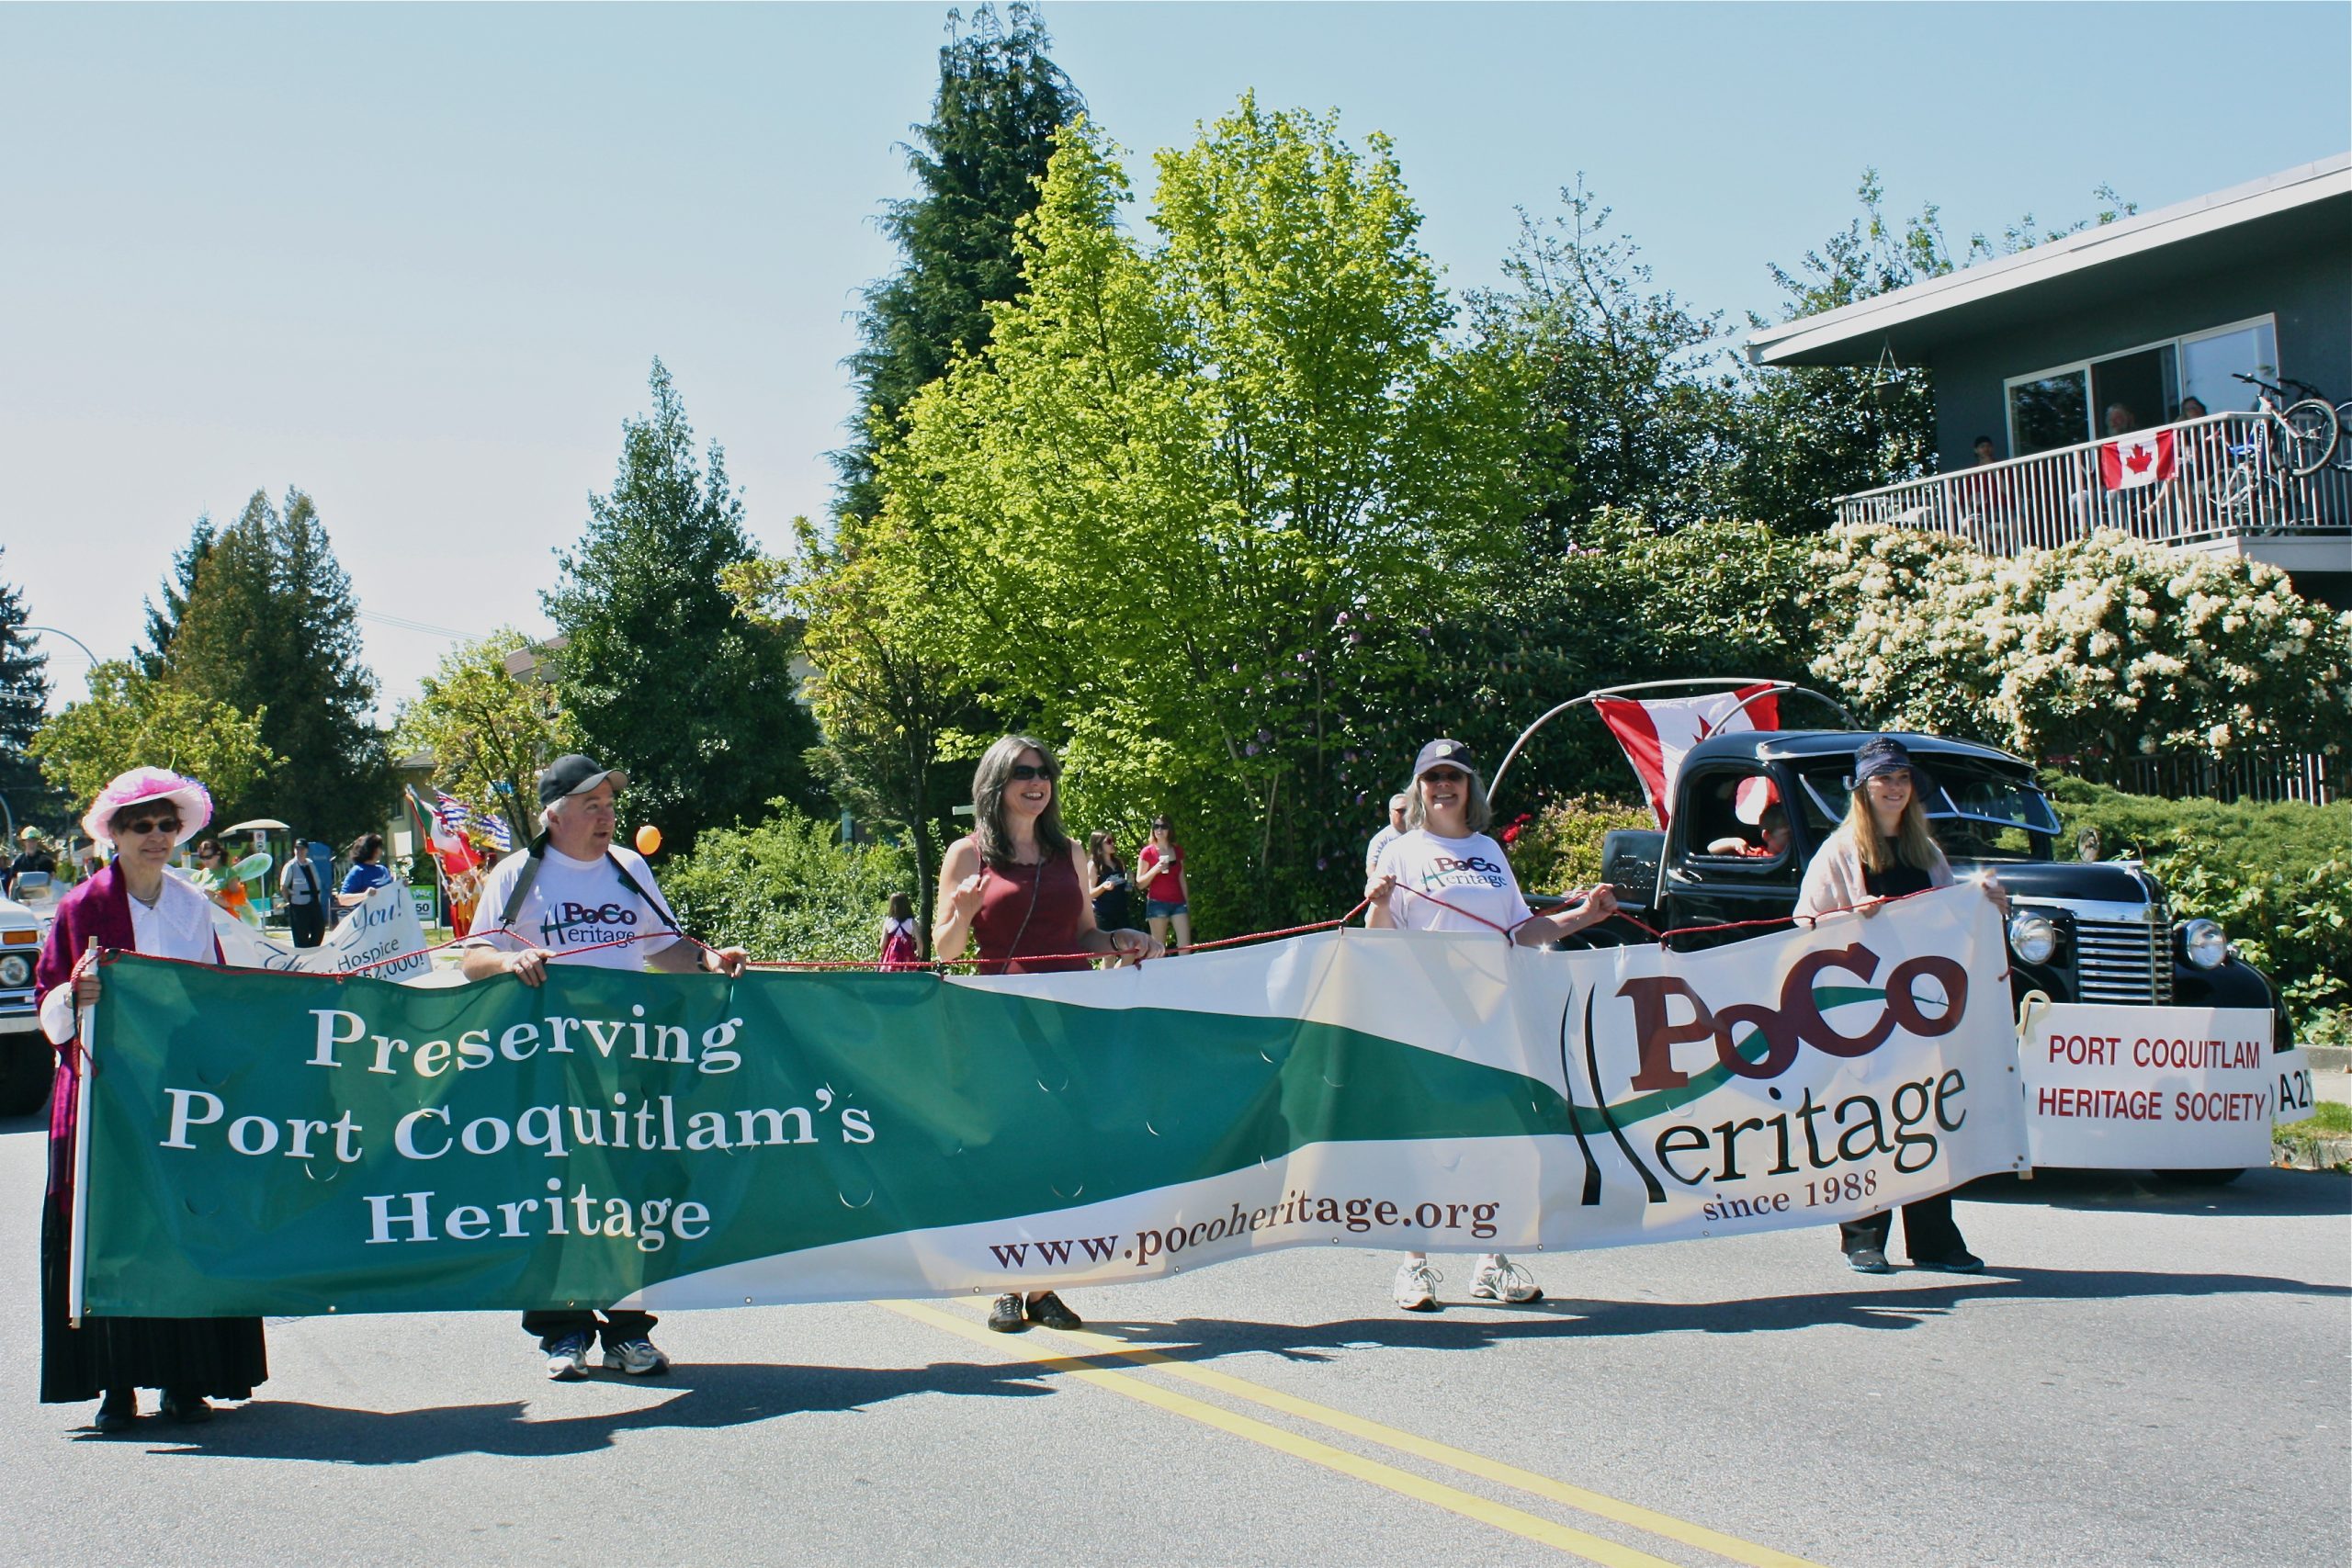 PoCo Heritage volunteers in a parade